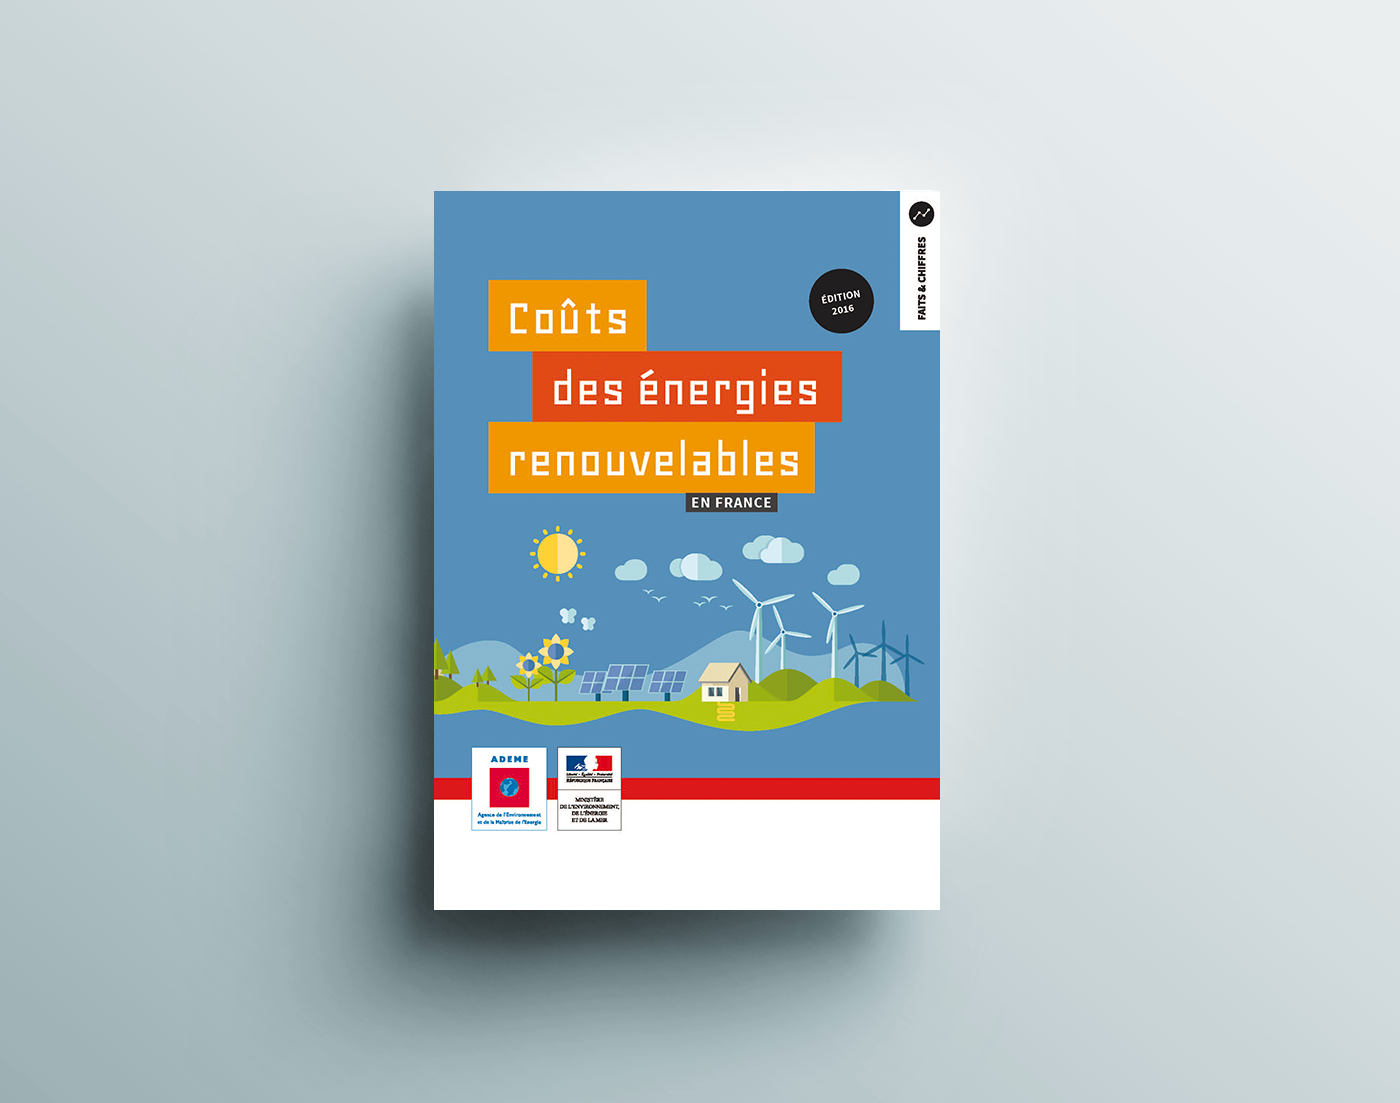 Le rôle de la Pompe à Chaleur reconnu par l'ADEME dans la maîtrise du "coût des énergies renouvelables en France"